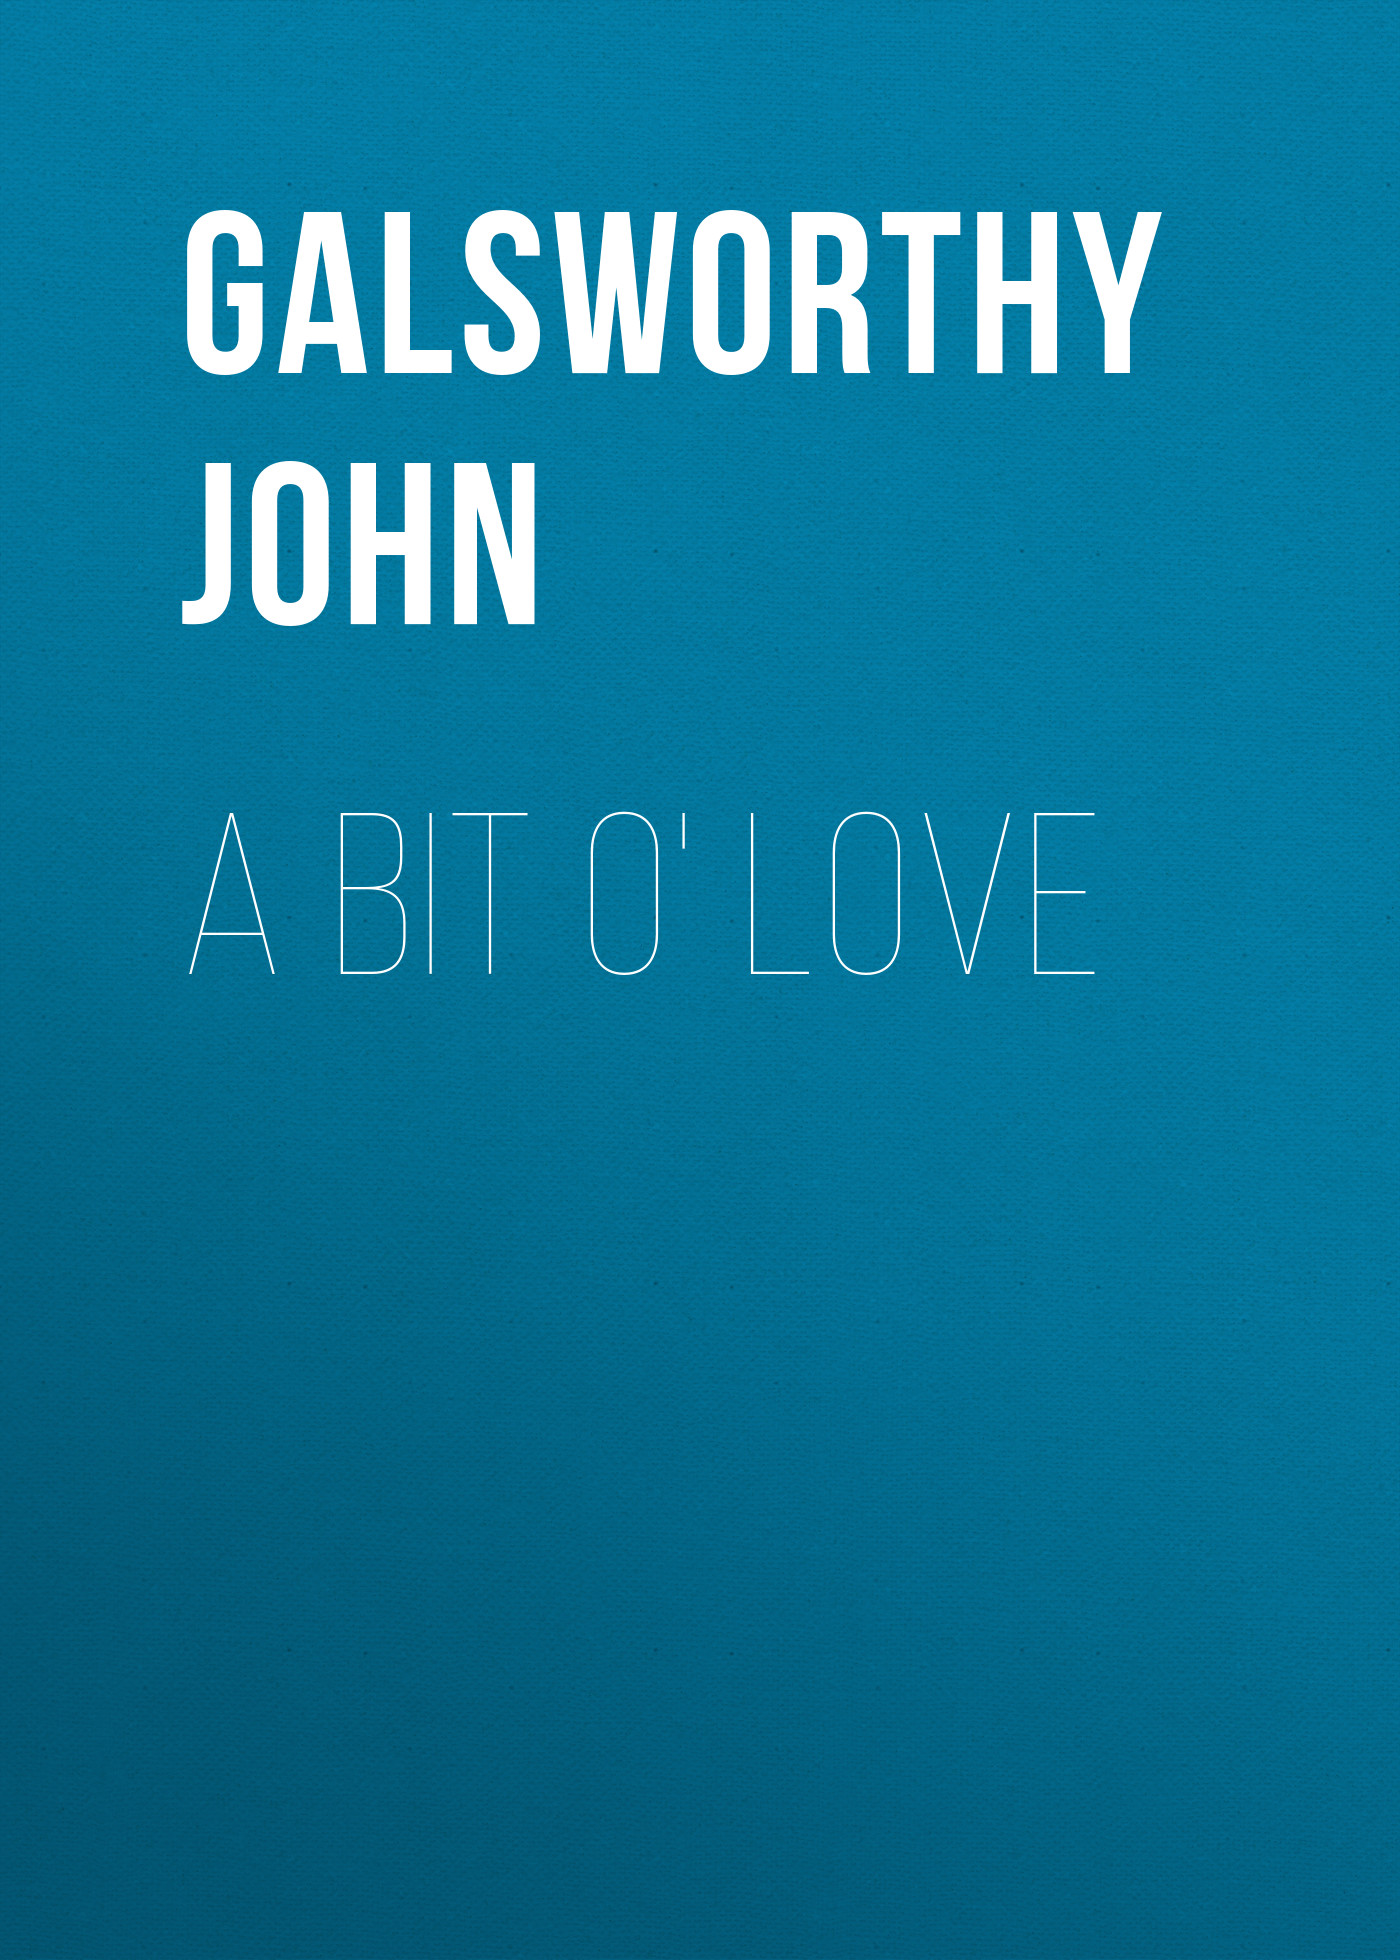 Книга A Bit O' Love из серии , созданная John Galsworthy, может относится к жанру Зарубежная старинная литература, Зарубежная классика. Стоимость электронной книги A Bit O' Love с идентификатором 25202207 составляет 0 руб.